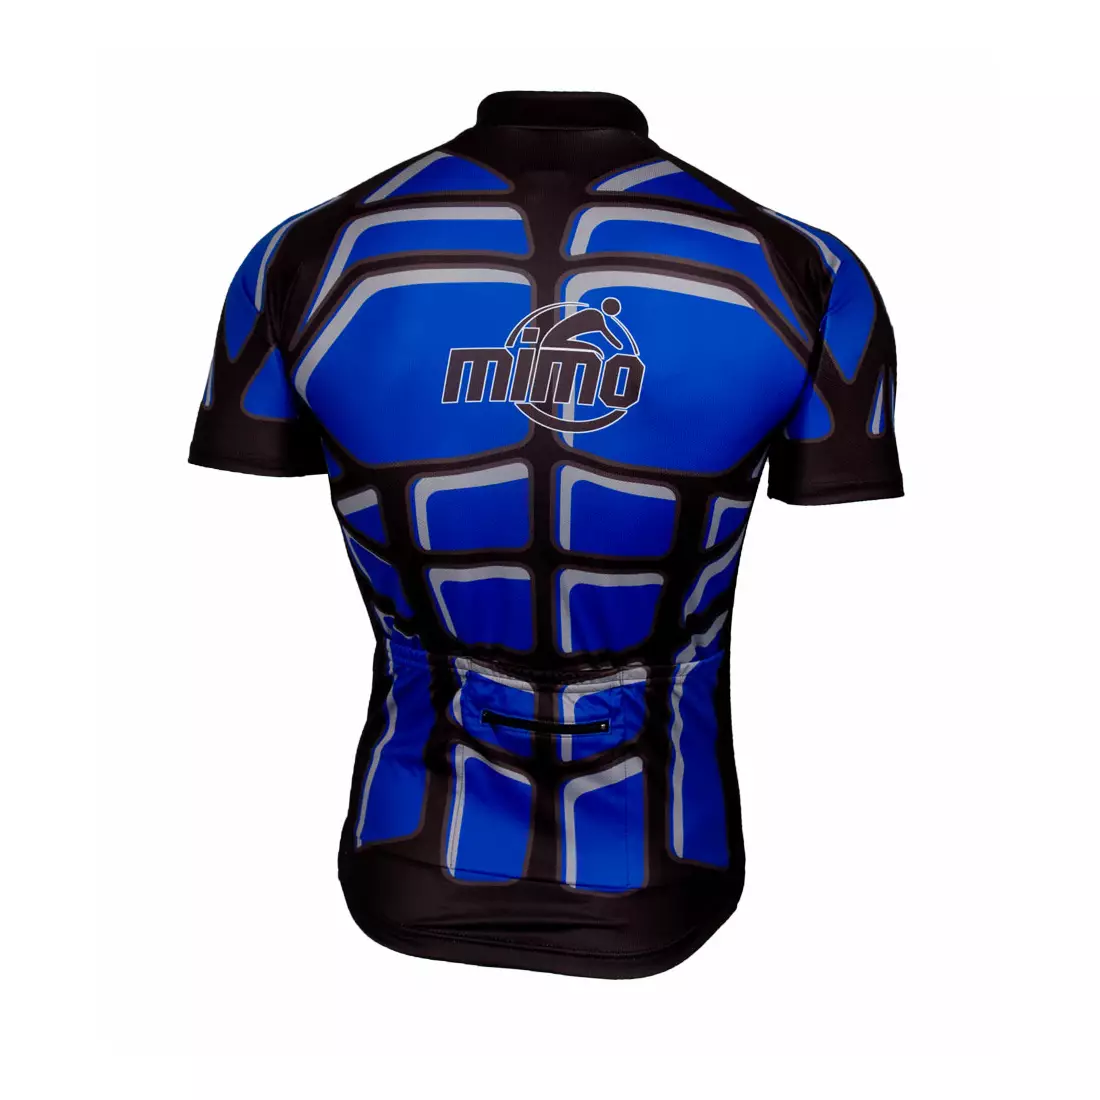 Tricou de ciclism pentru bărbați MikeSPORT DESIGN BODY, negru și albastru